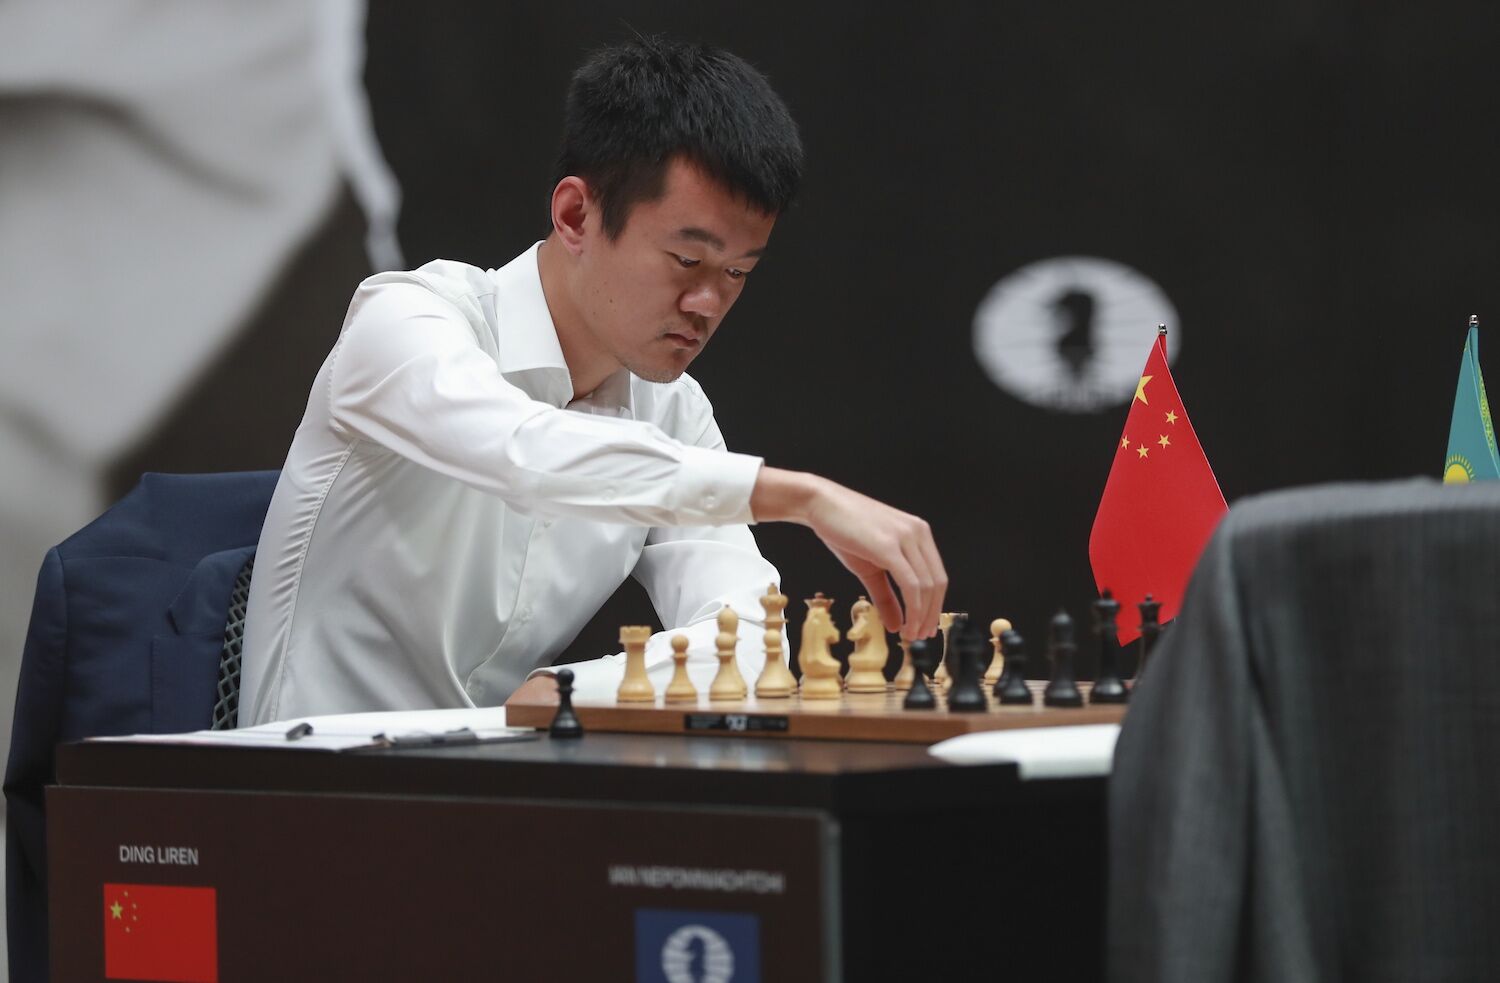 Ding derrota Nepomniachtchti e é o primeiro chinês campeão mundial de xadrez  - Mais modalidades - SAPO Desporto